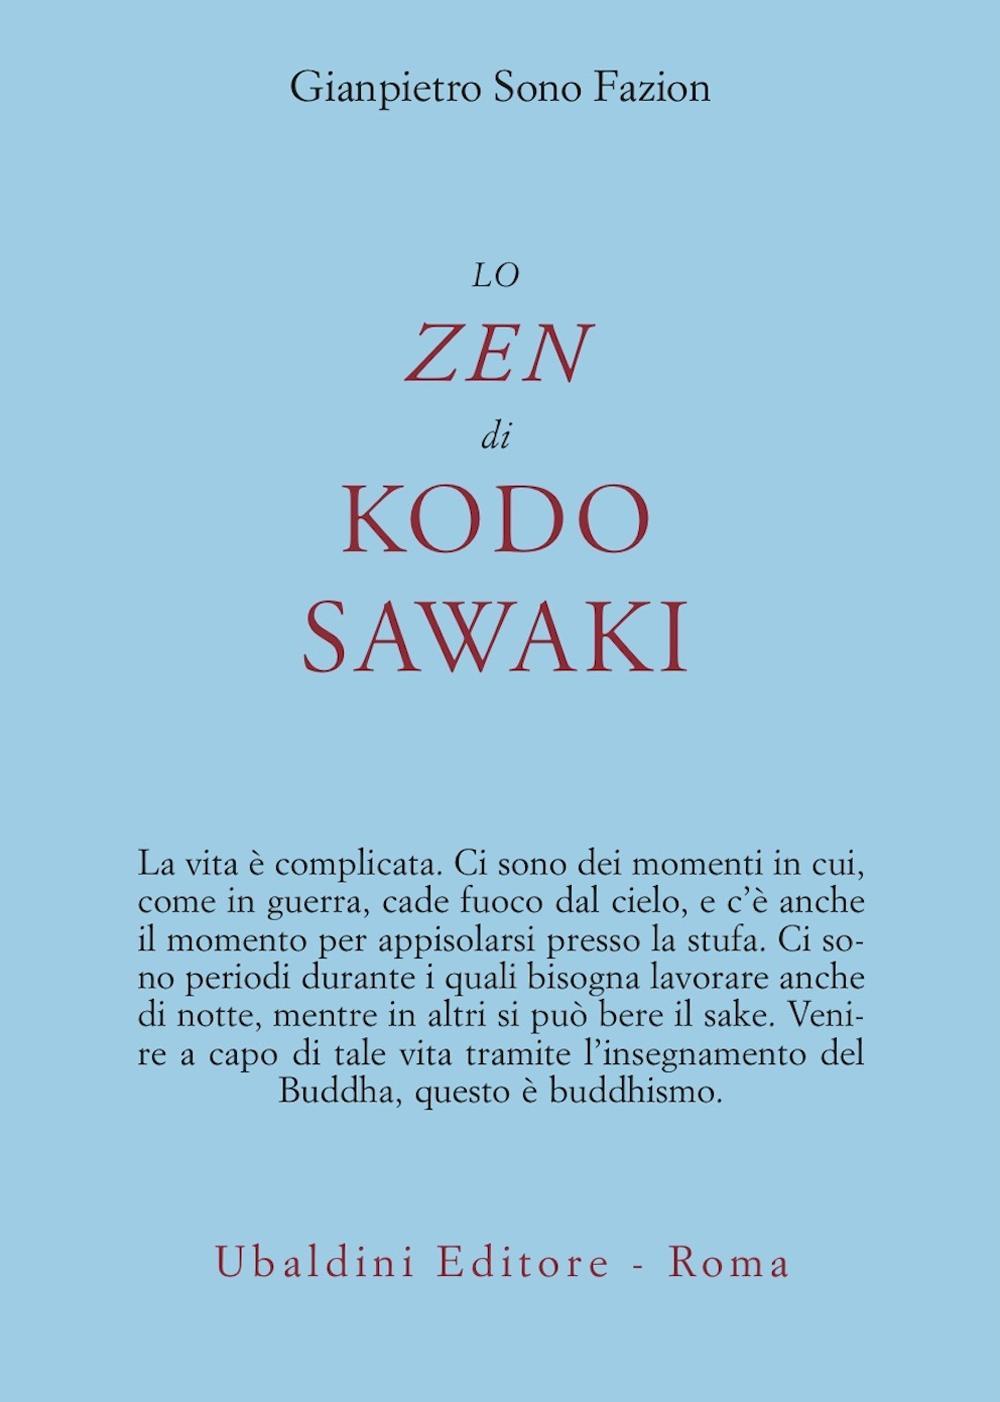 Carte zen di Kodo Sawaki Gianpietro Sono Fazion